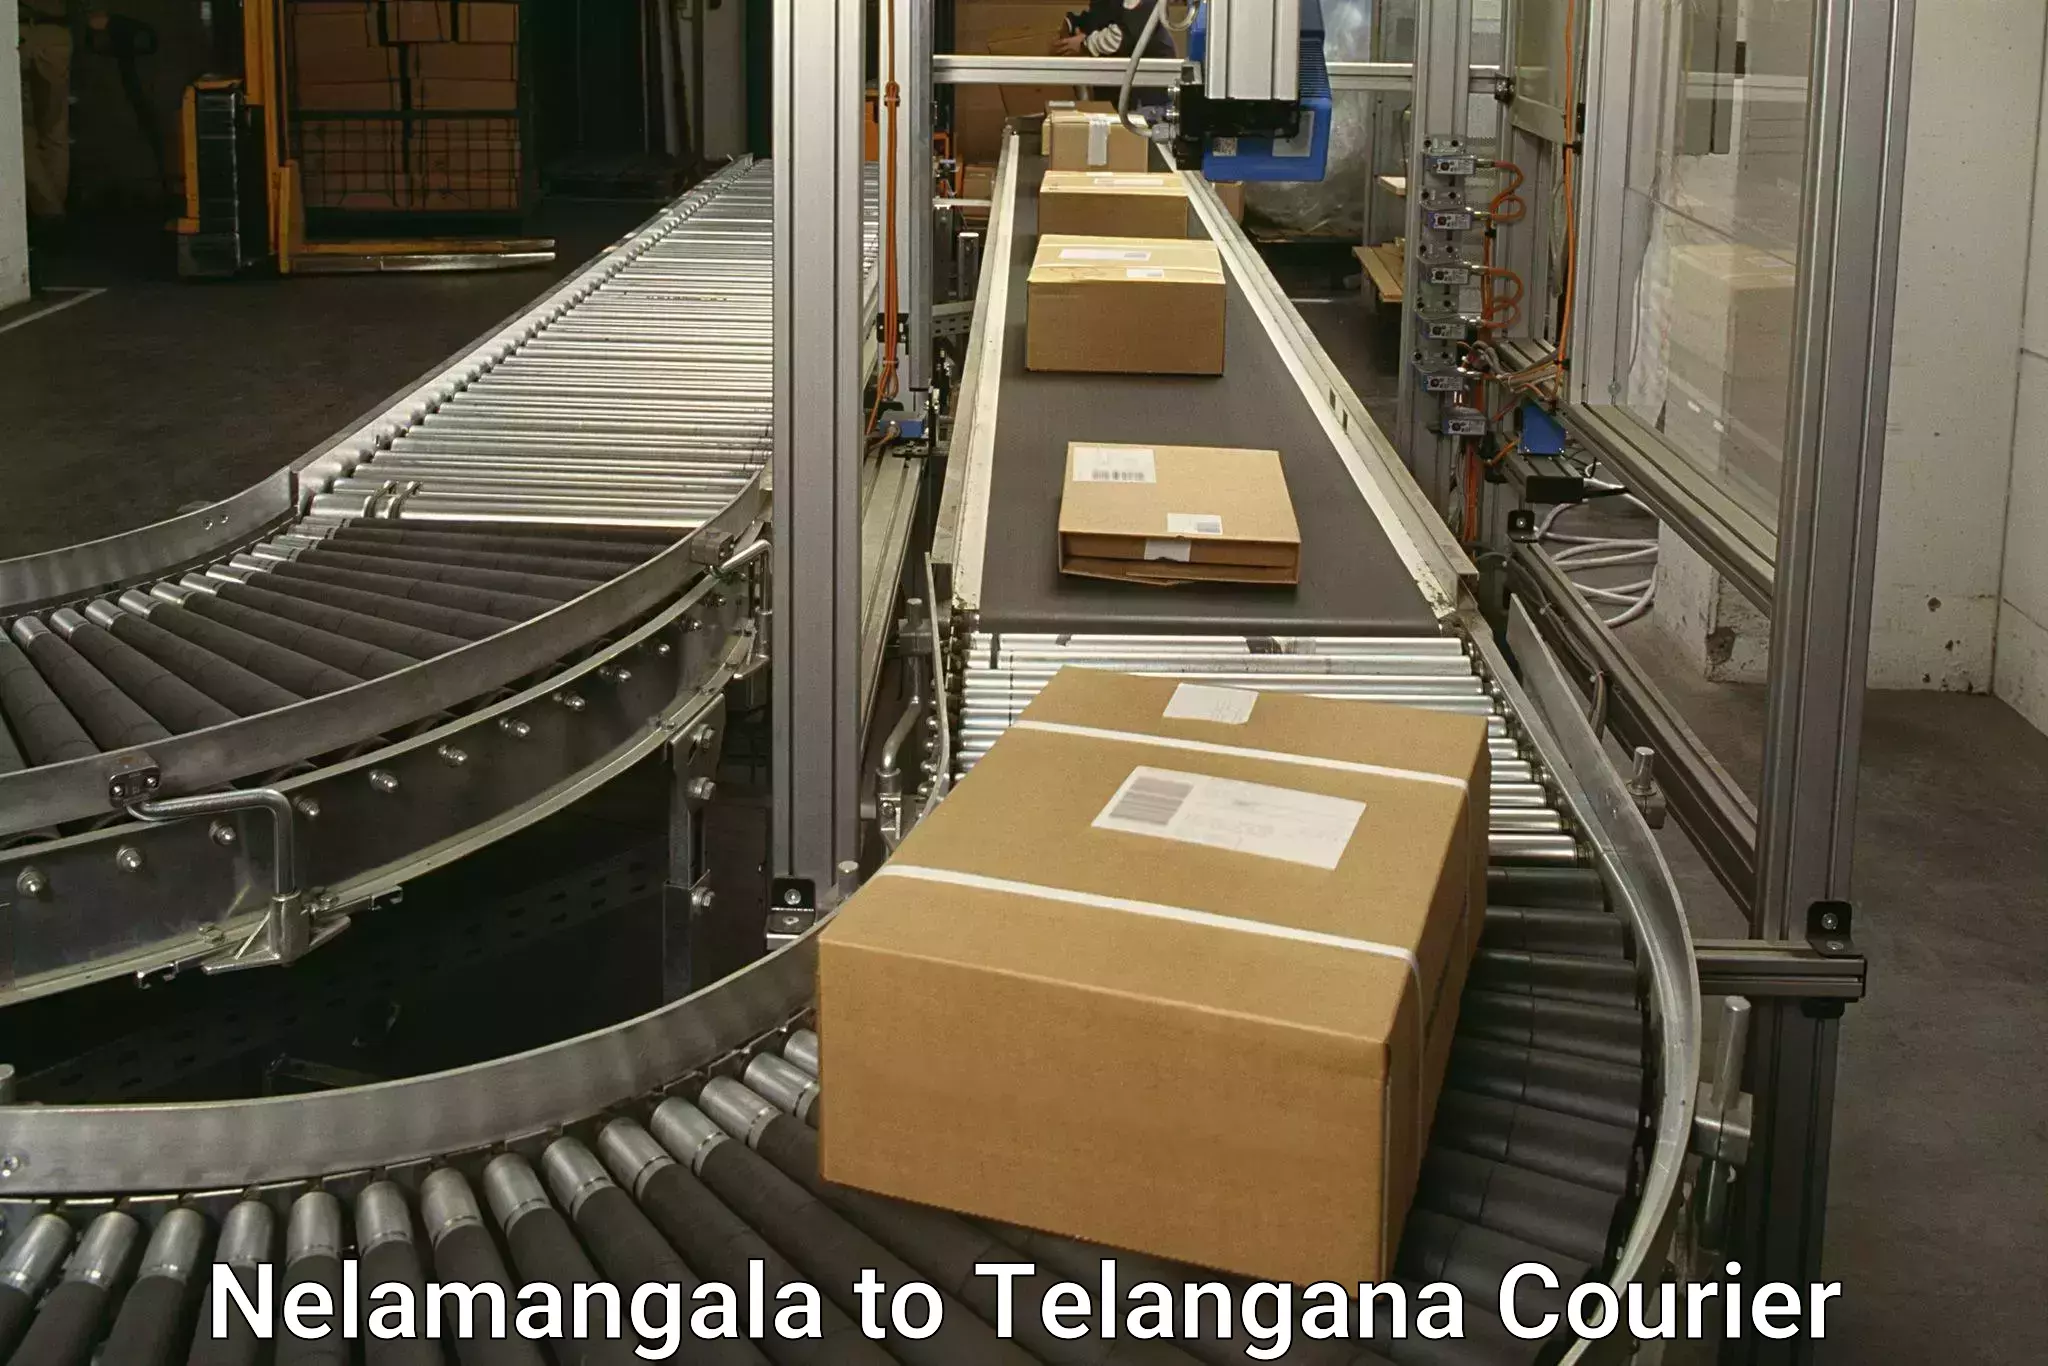 Subscription-based courier Nelamangala to Tiryani